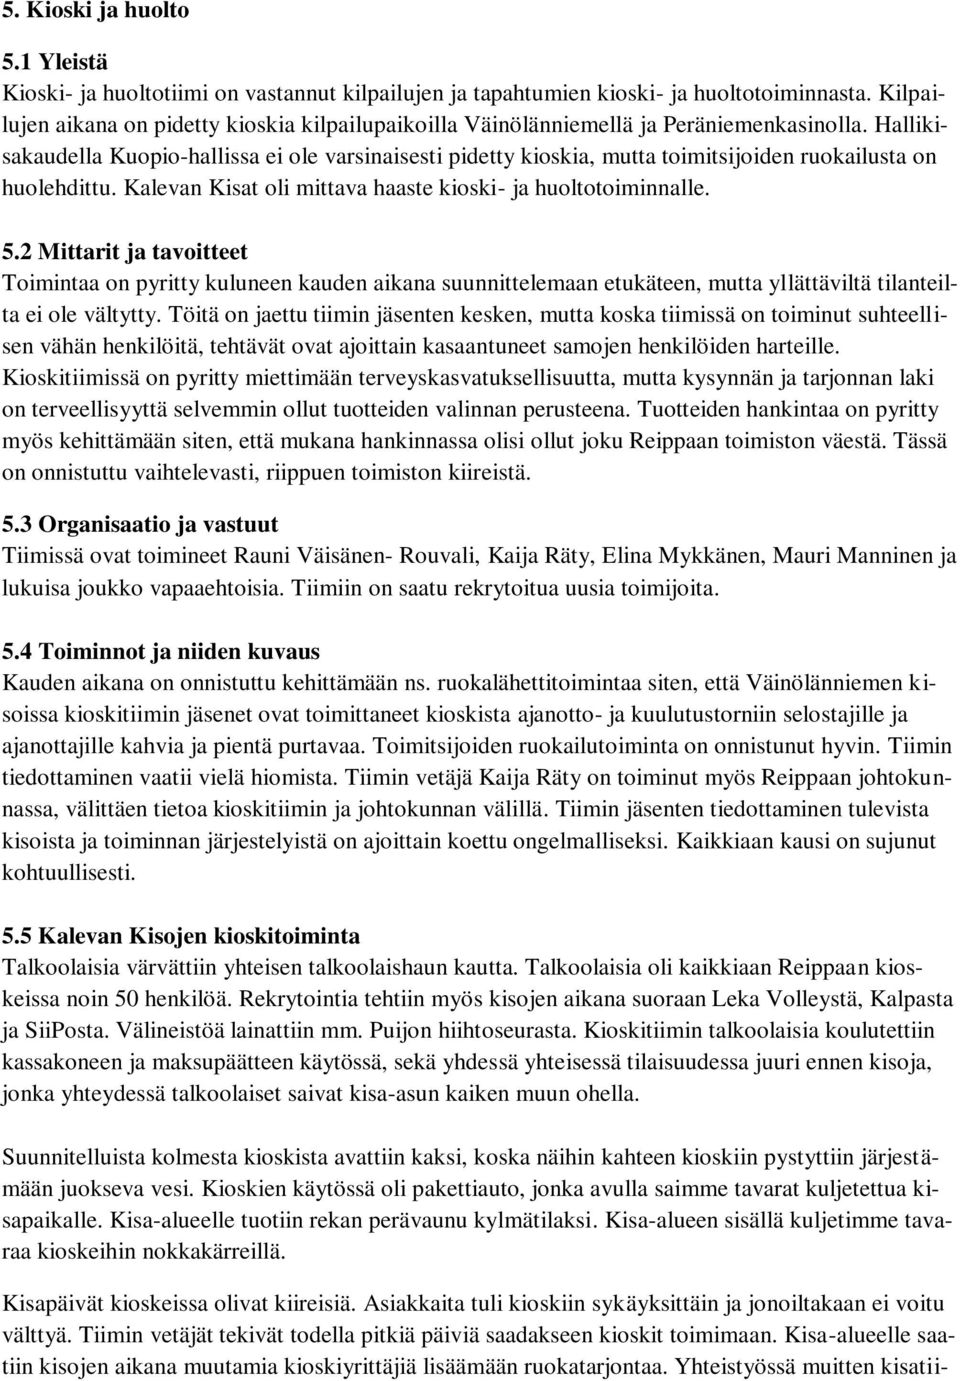 Hallikisakaudella Kuopio-hallissa ei ole varsinaisesti pidetty kioskia, mutta toimitsijoiden ruokailusta on huolehdittu. Kalevan Kisat oli mittava haaste kioski- ja huoltotoiminnalle. 5.